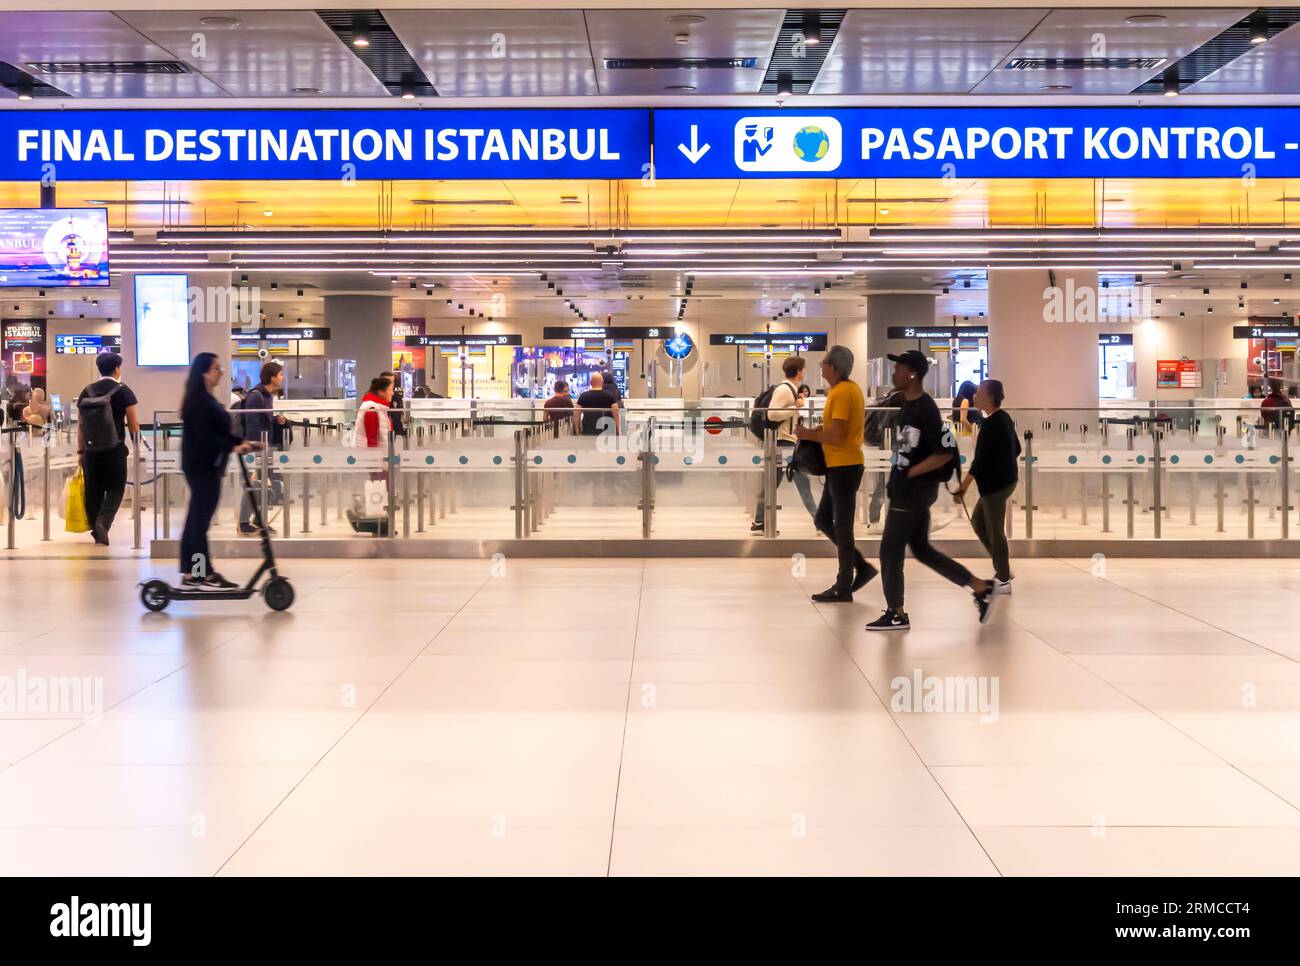 Cartello destinazione finale Istanbul, cartello di controllo passaporto. Aeroporto Internazionale Havalimani di Istanbul - IST - arrivi, ingresso controllo passaporti. Turchia Foto Stock